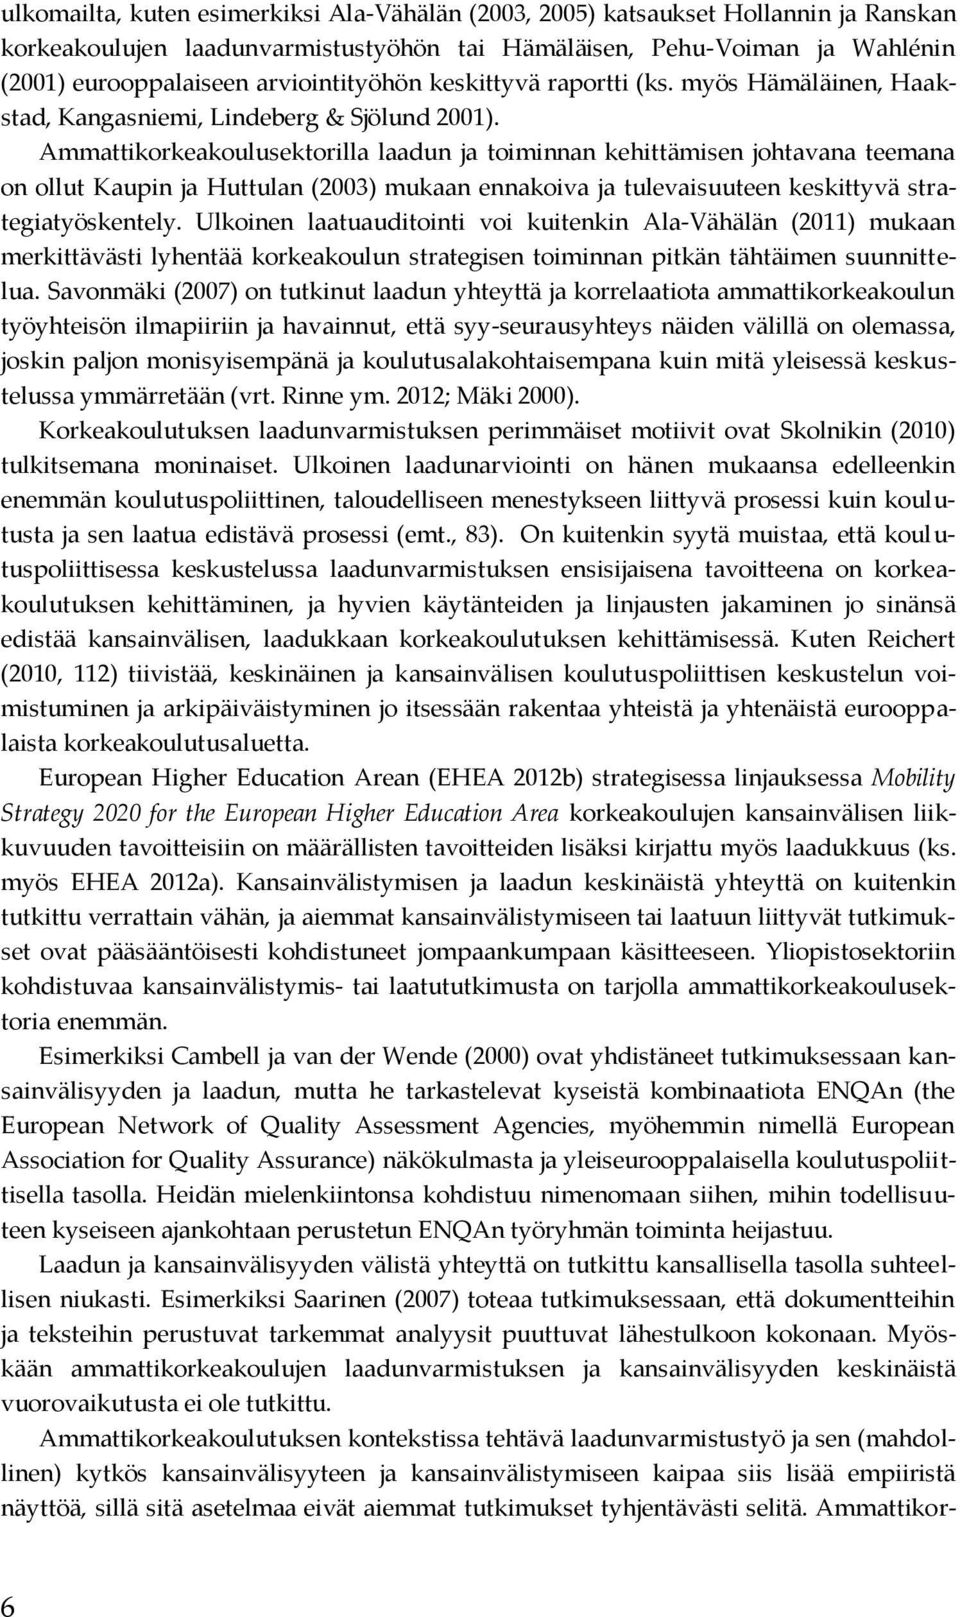 Ammattikorkeakoulusektorilla laadun ja toiminnan kehittämisen johtavana teemana on ollut Kaupin ja Huttulan (2003) mukaan ennakoiva ja tulevaisuuteen keskittyvä strategiatyöskentely.